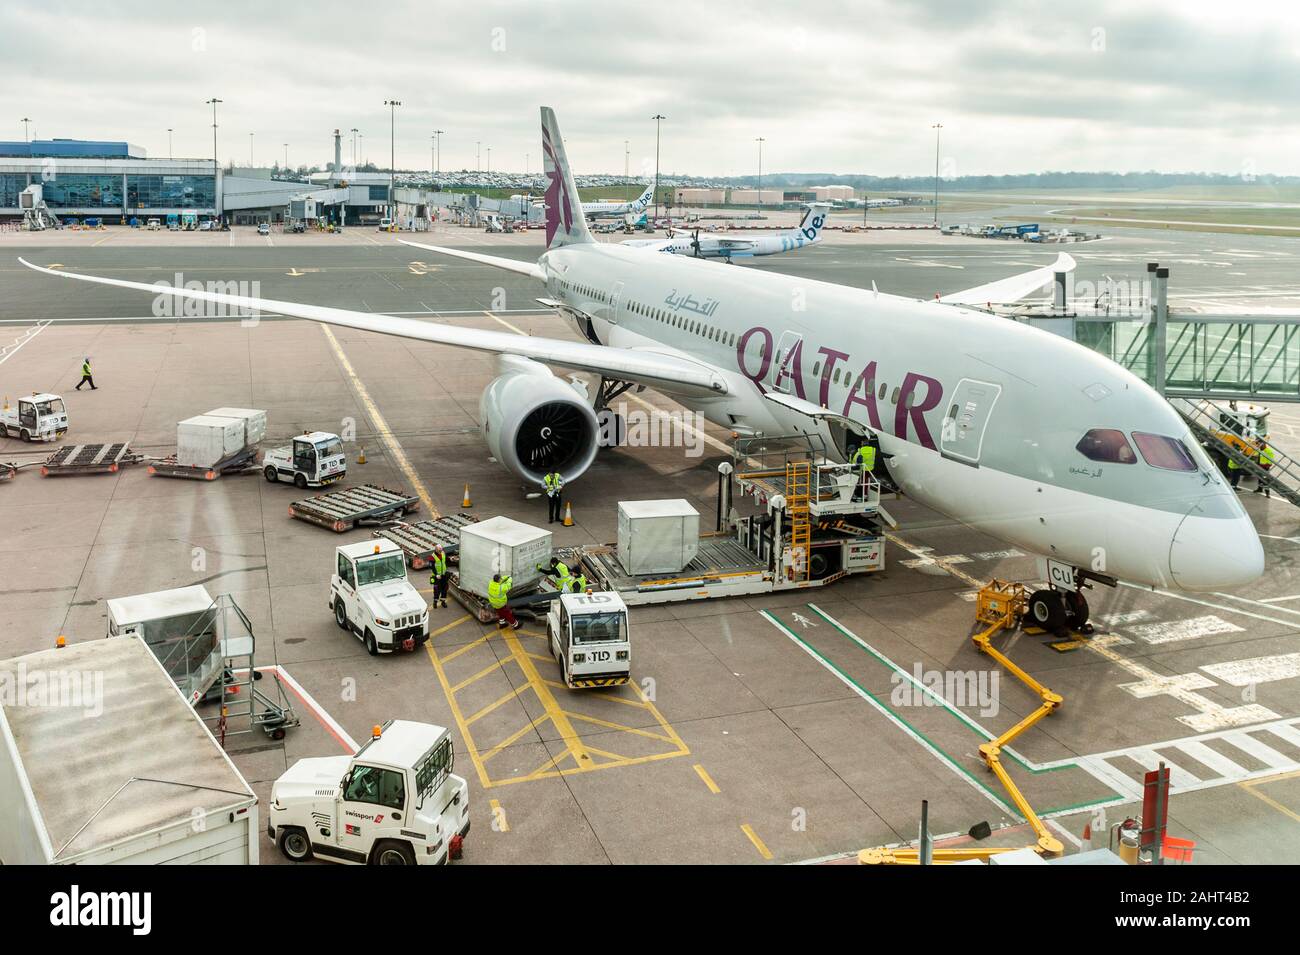 Qatar Airways Boeing 787-8 Dreamliner ha i bagagli dei passeggeri scaricati all'aeroporto di Birmingham, West Midlands, Regno Unito, dopo un volo dal Medio Oriente. Foto Stock